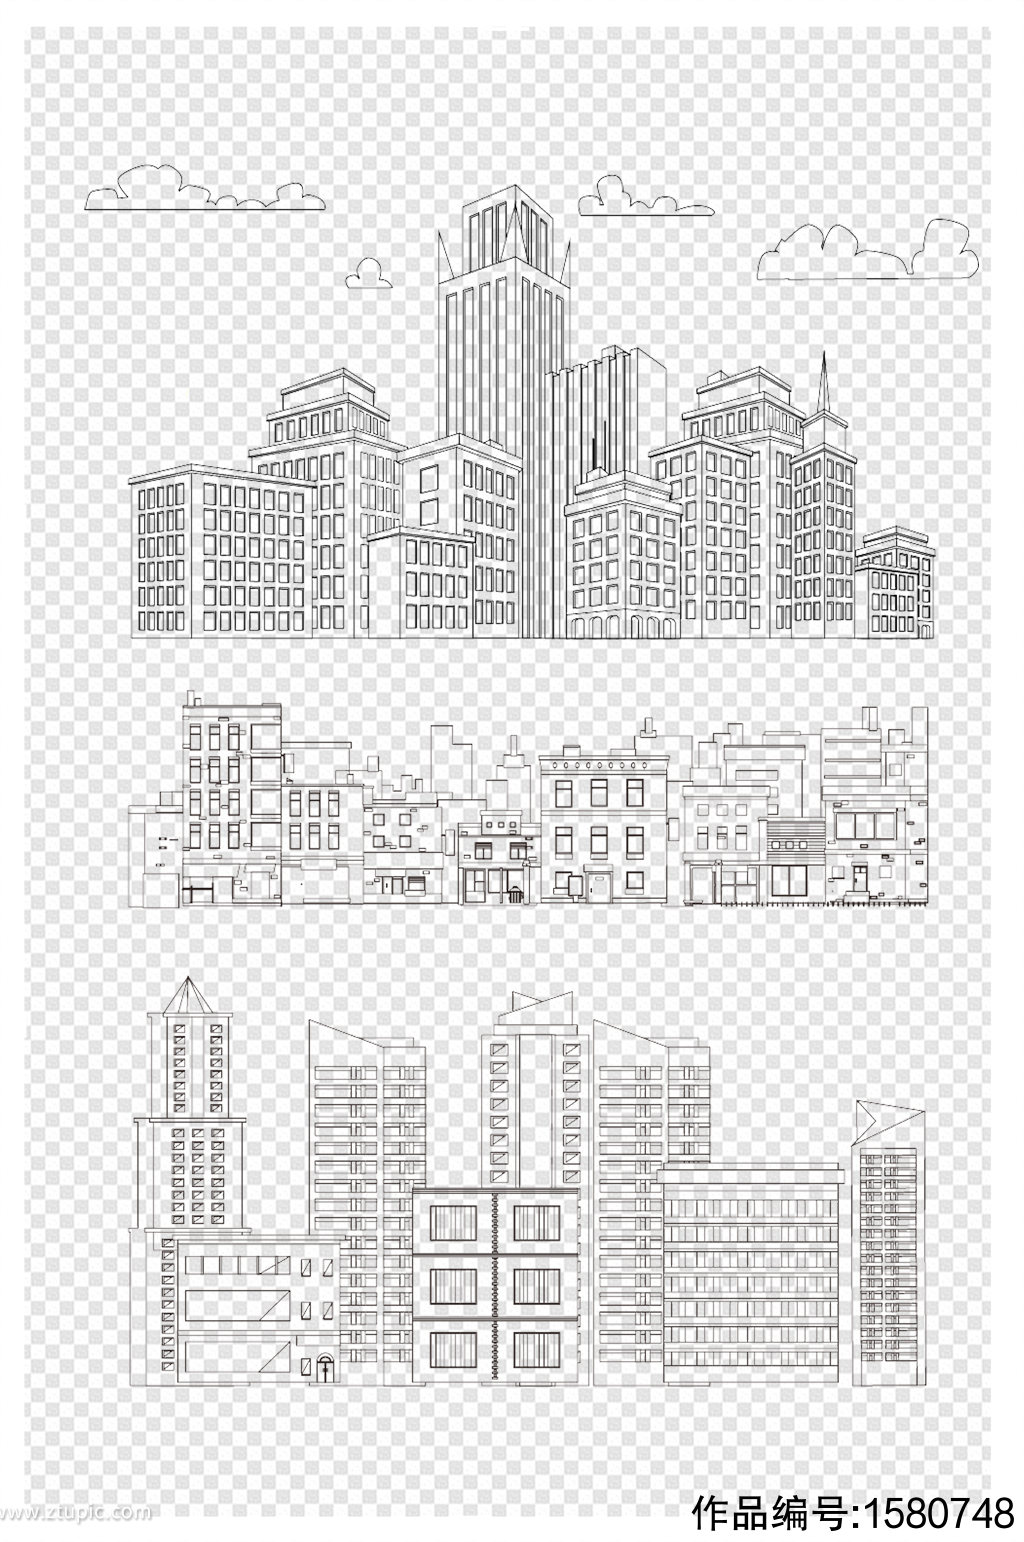 城市建筑简笔画图片素材免费下载 - 觅知网